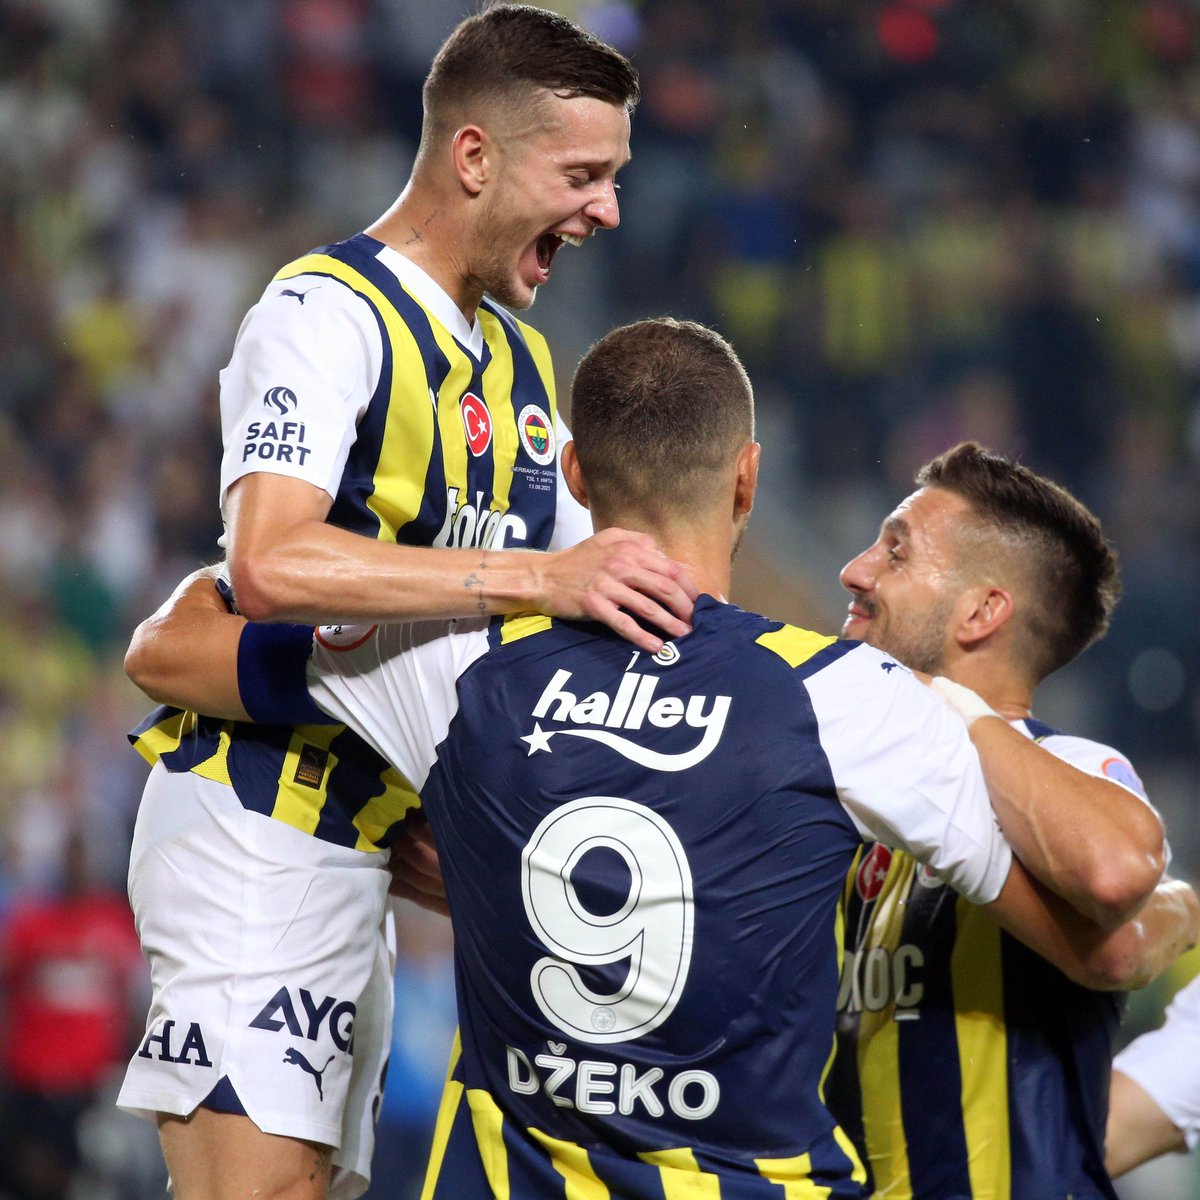 Trendyol Süper Lig'de Fenerbahçe, sahasında Gaziantep FK'yı 2-1 mağlup etti. ⚽ 3' Dzeko ⚽ 18' Dzeko 🔴 23' Maxim ⚽ 45+5' Arda Kızıldağ ❌ 54' Tadic (P)